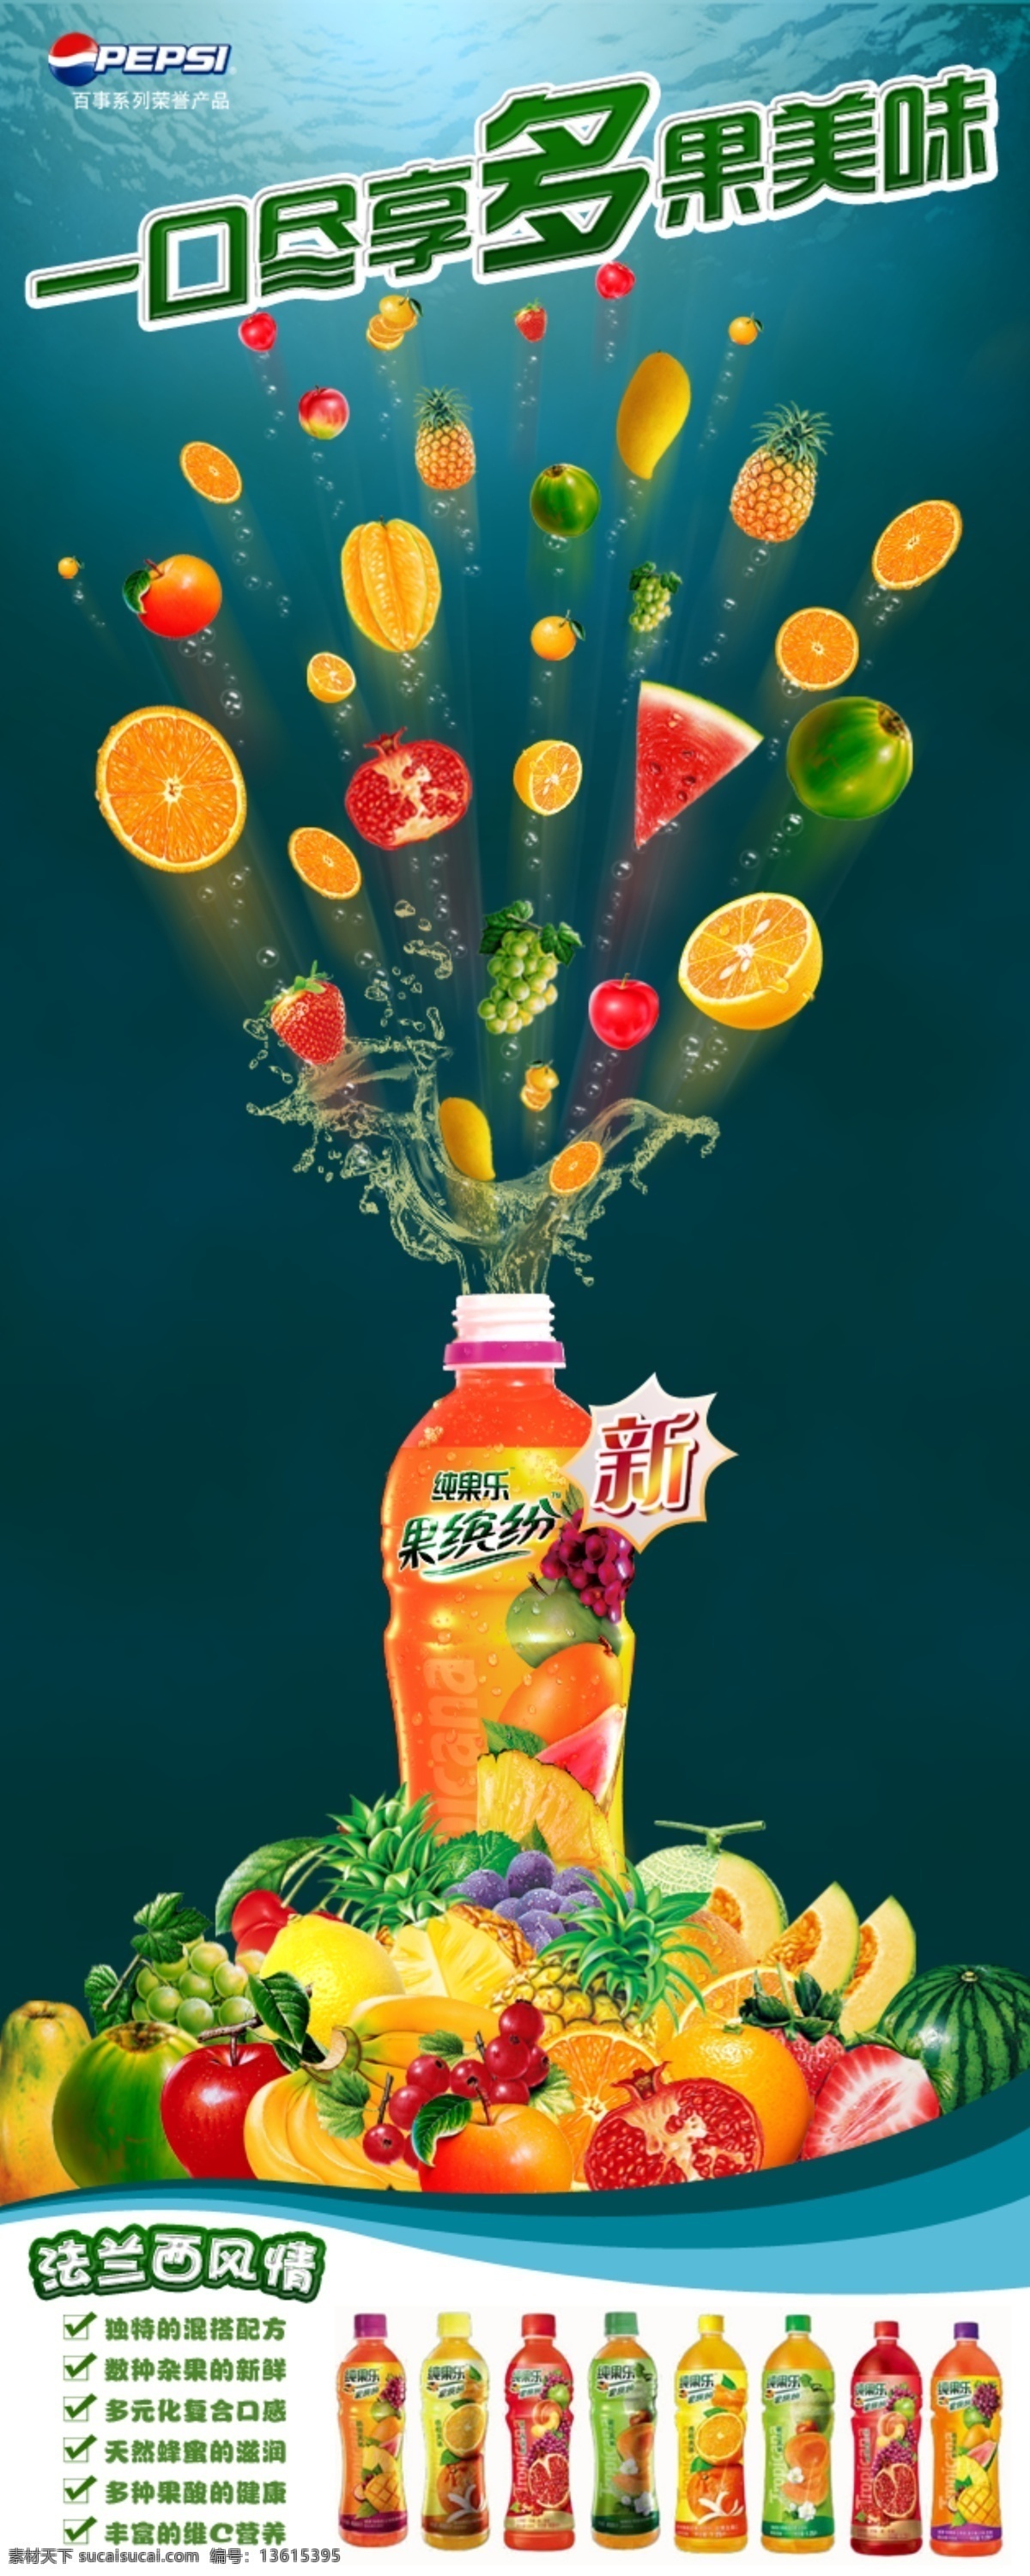 纯 果 乐 易拉宝 饮料 广告 dm宣传单 纯果乐 果缤纷 橙汁 水果 桔子 橙子 菠萝 西瓜 广告设计模板 源文件